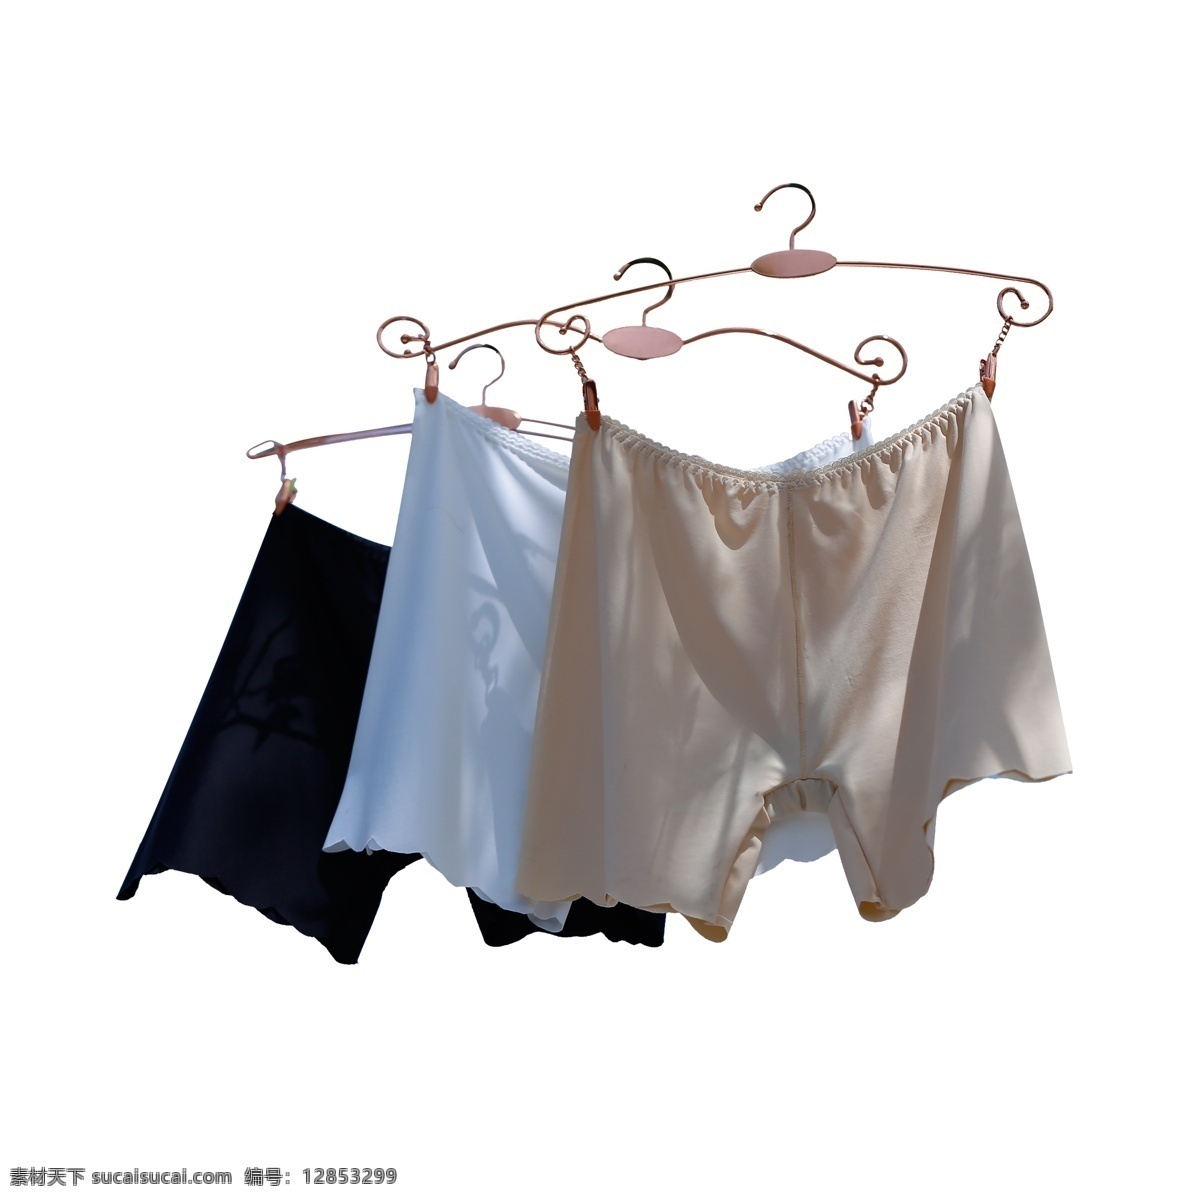 灰色 短裤 晾晒 衣服 元素 服装 钩子 悬挂 纹理 纺织 纯棉 服饰 真实 阳光 晒 杀菌 消毒